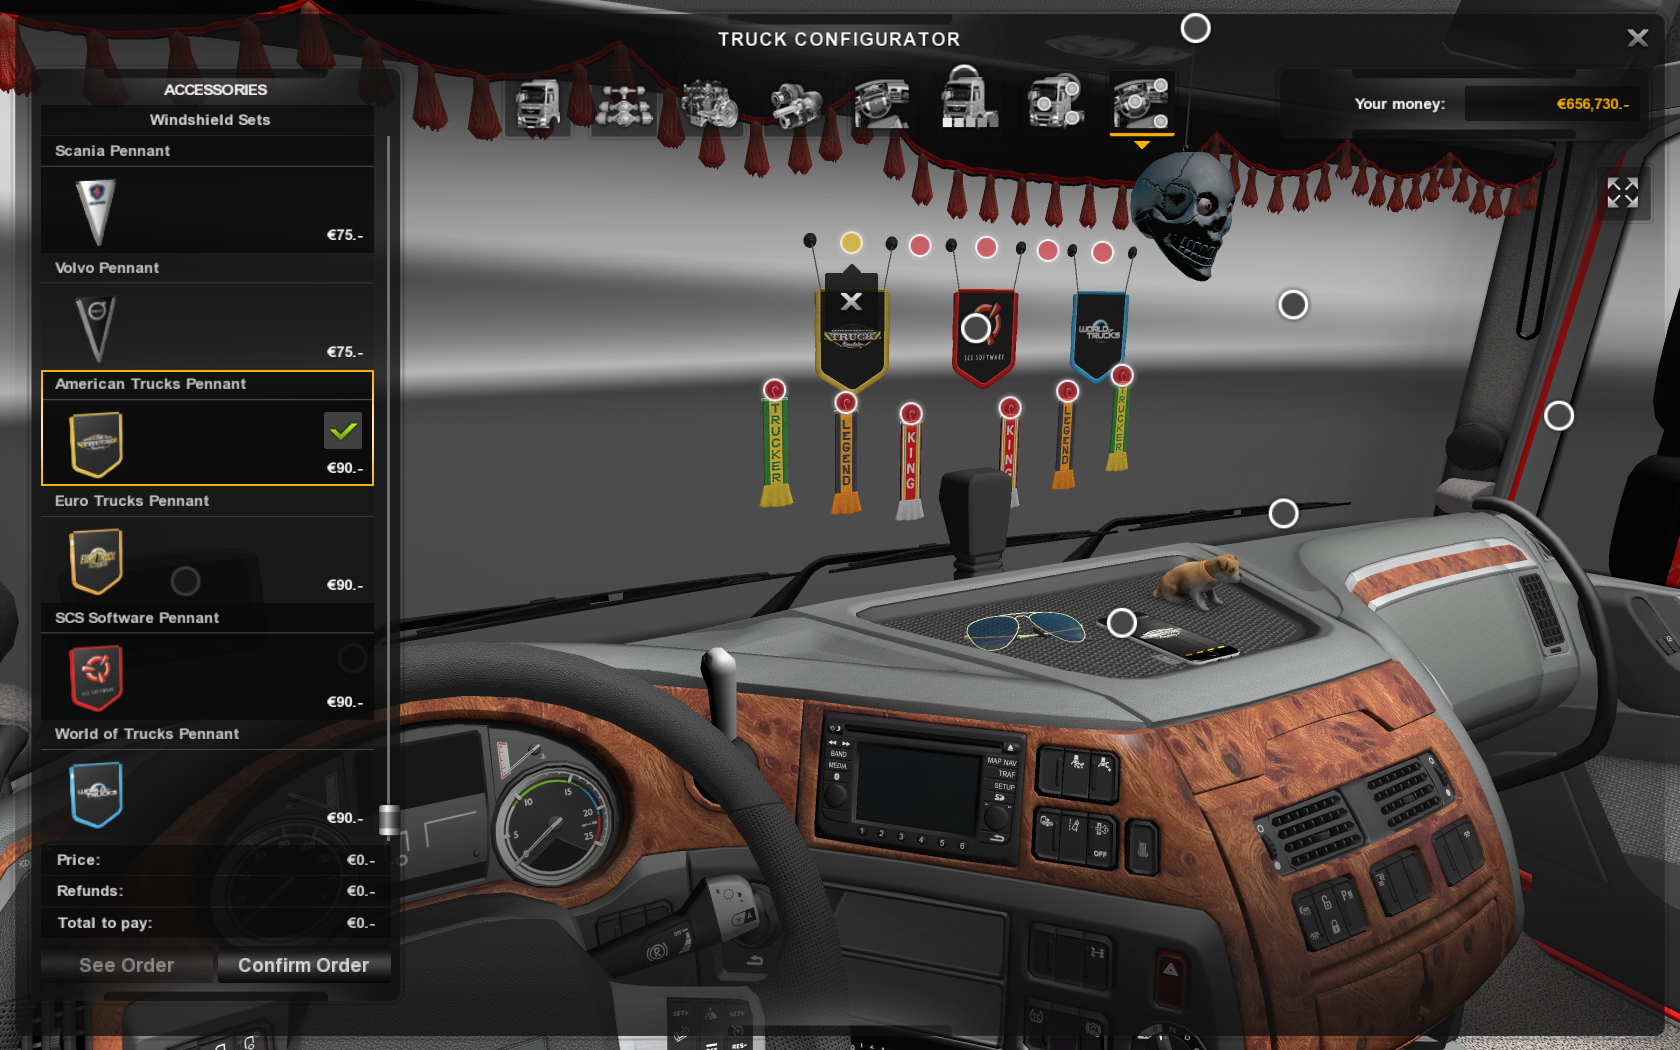 Euro Simulator 2 - Cabin Accessories on Steam